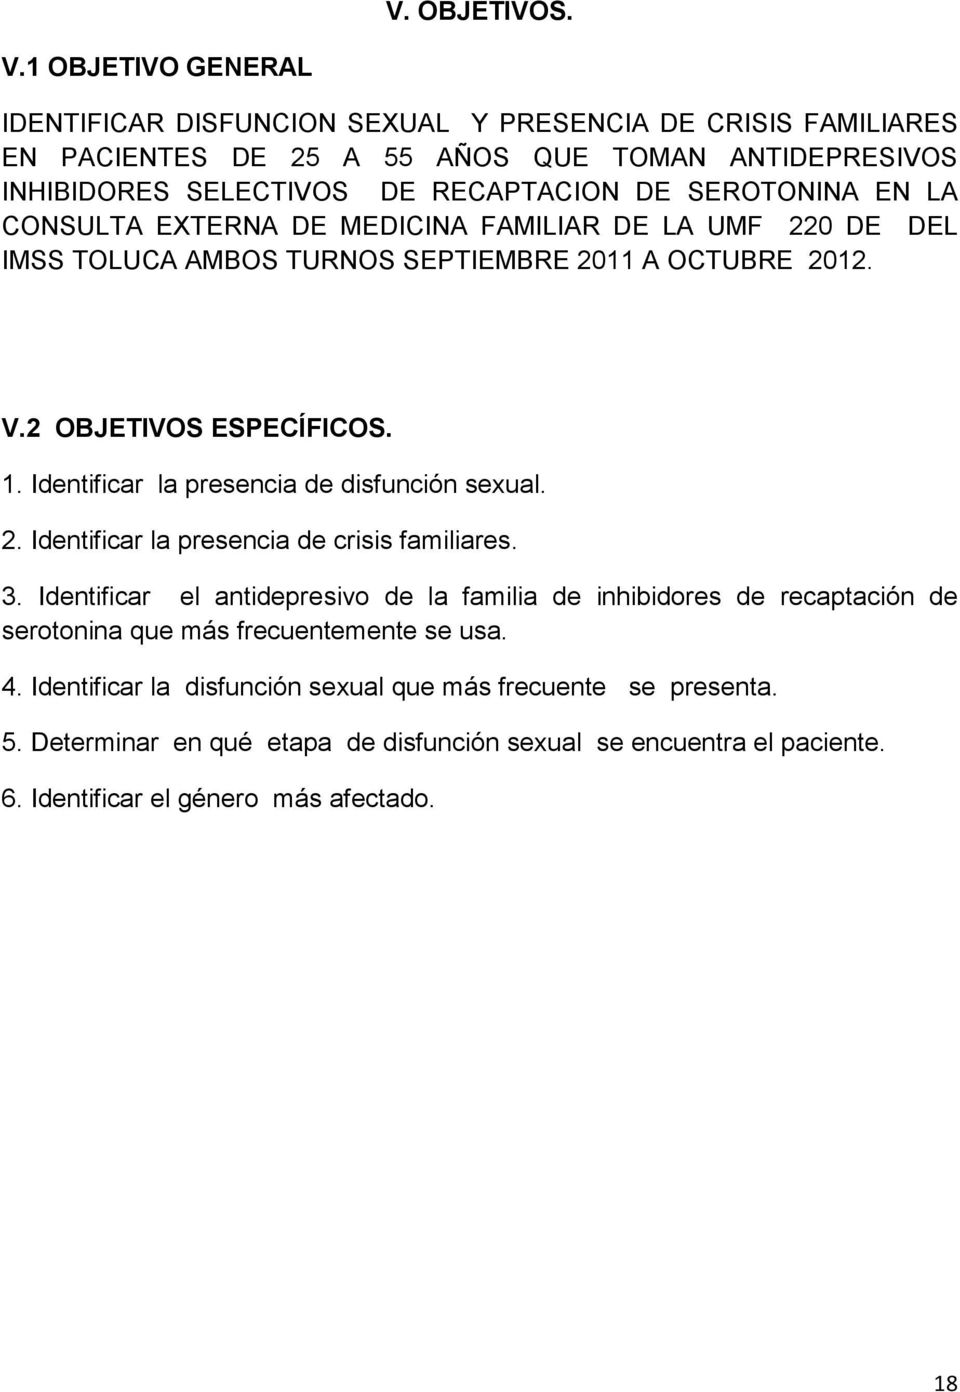 EN LA CONSULTA EXTERNA DE MEDICINA FAMILIAR DE LA UMF 220 DE DEL IMSS TOLUCA AMBOS TURNOS SEPTIEMBRE 2011 A OCTUBRE 2012. V.2 OBJETIVOS ESPECÍFICOS. 1.